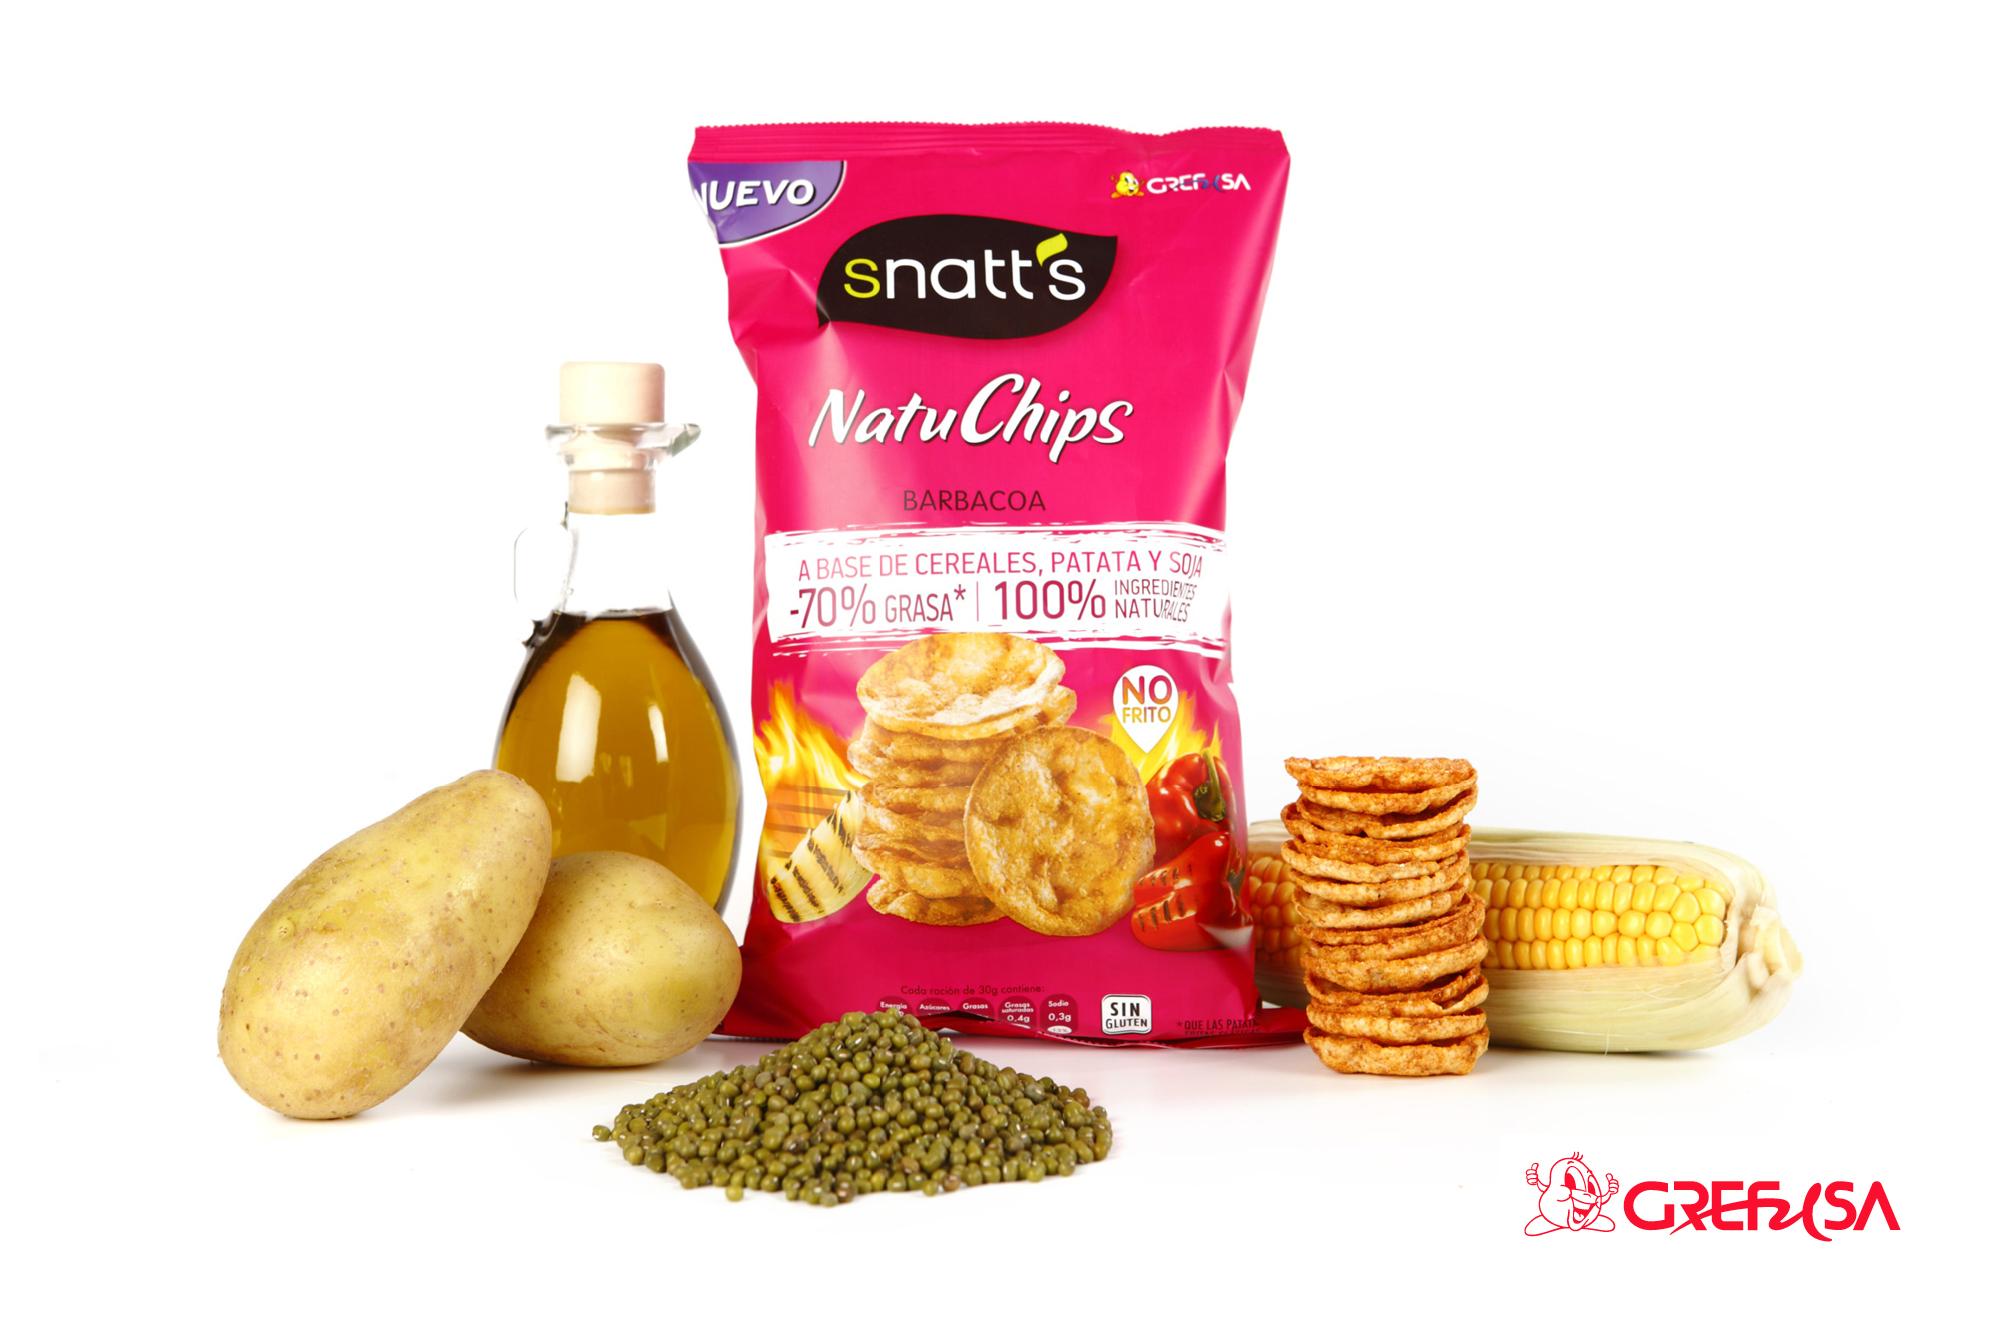 Snatt's Natuchips Grefusa, una alternativa real y saludable a las clásicas patatas fritas